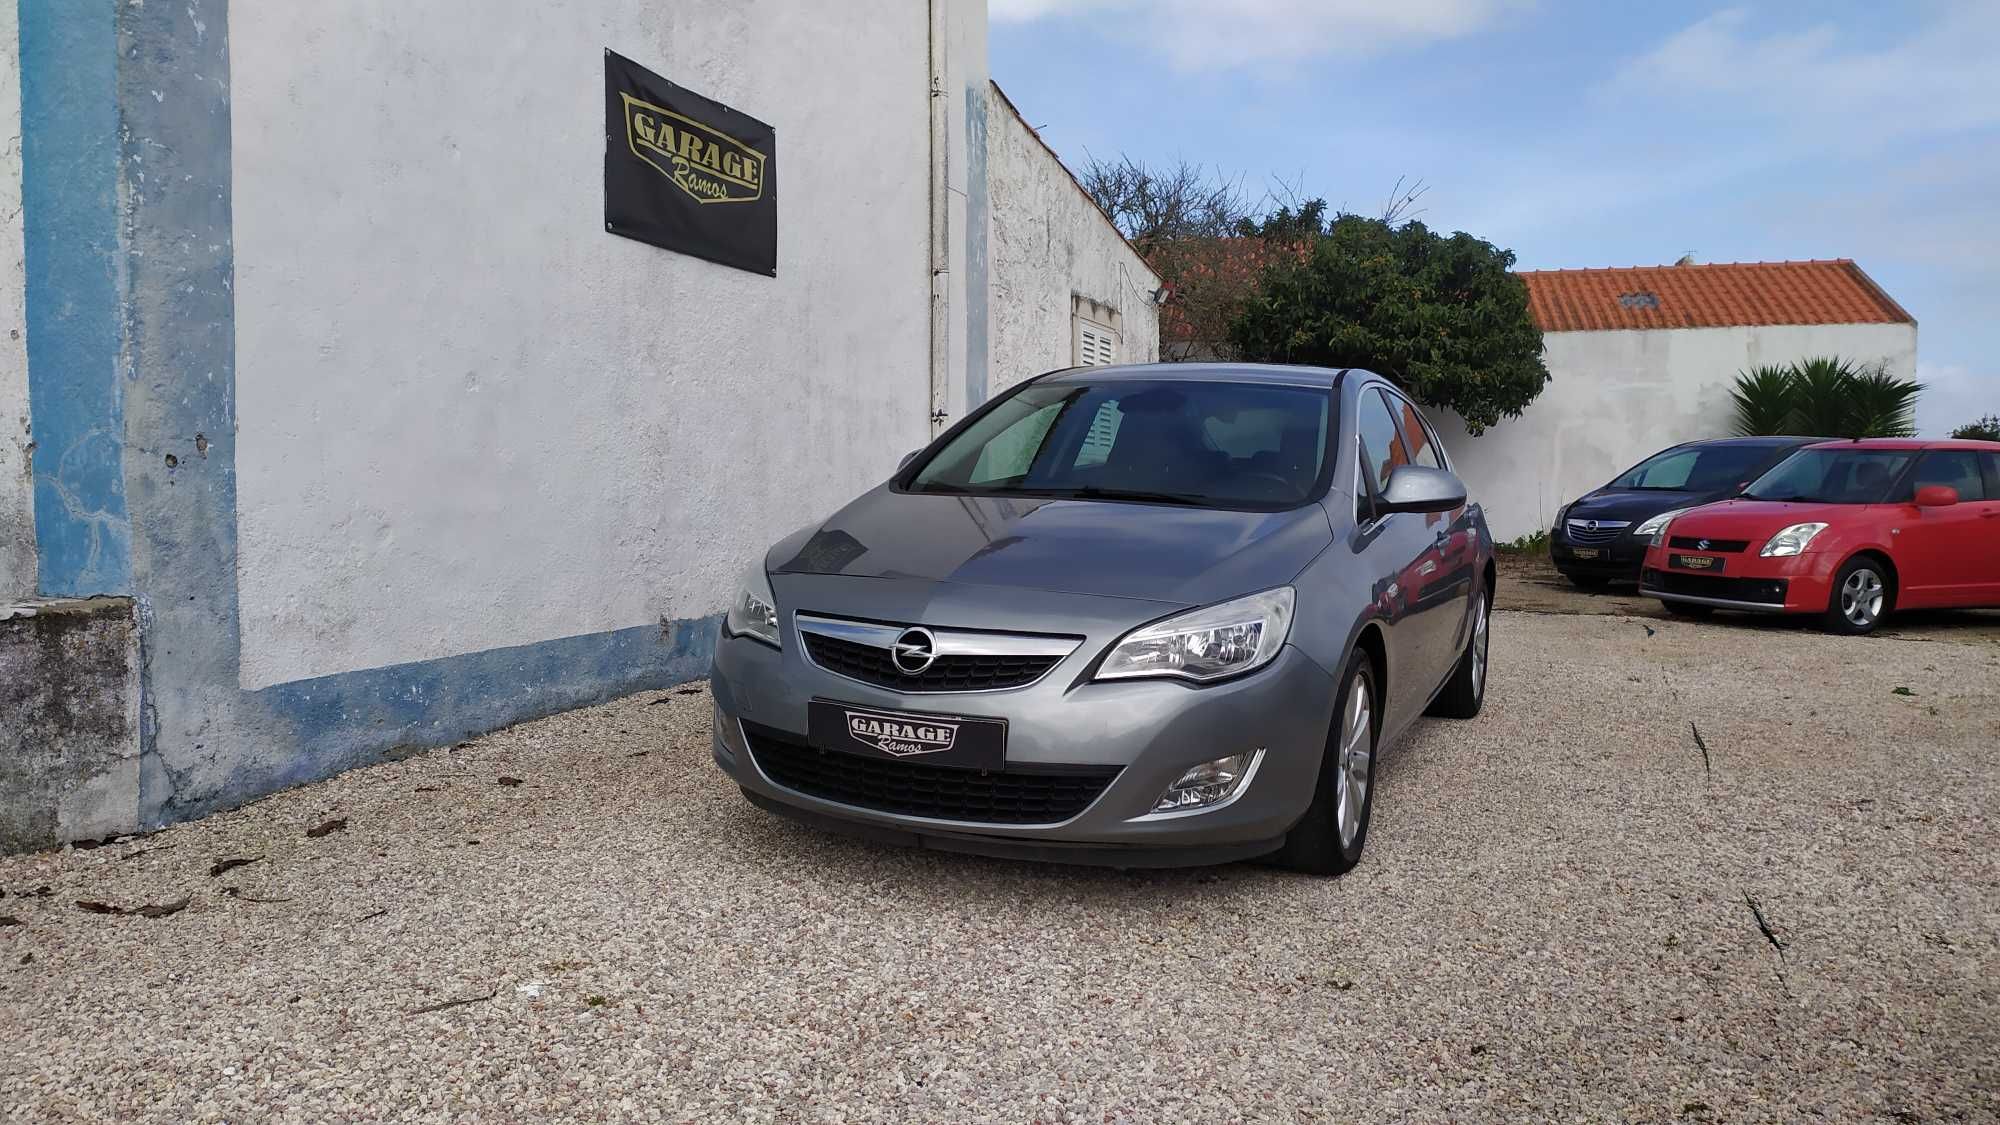 Opel Astra 1.3 Cdti Cosmo